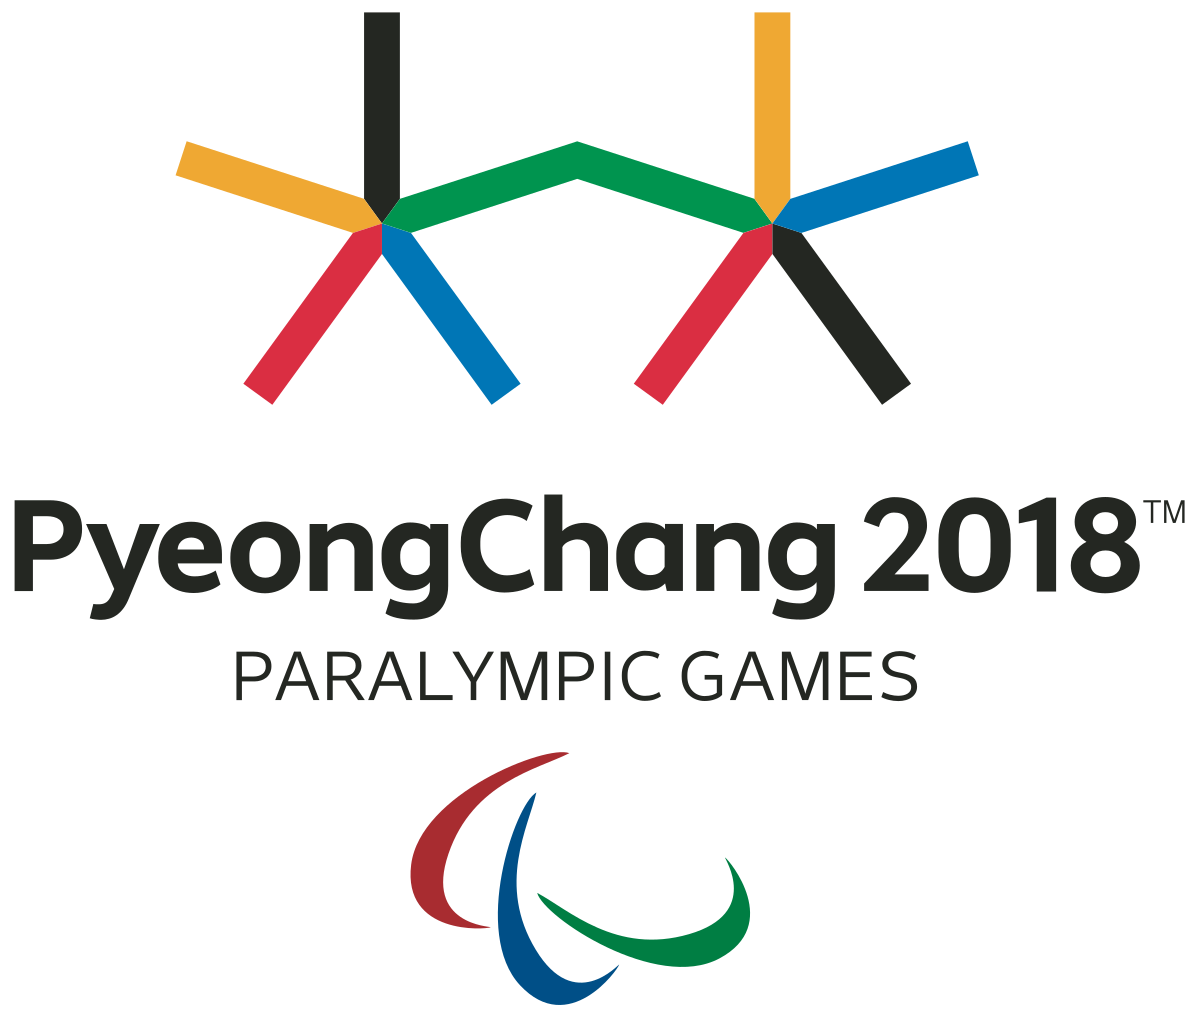 Pyeongchang 2018 Para